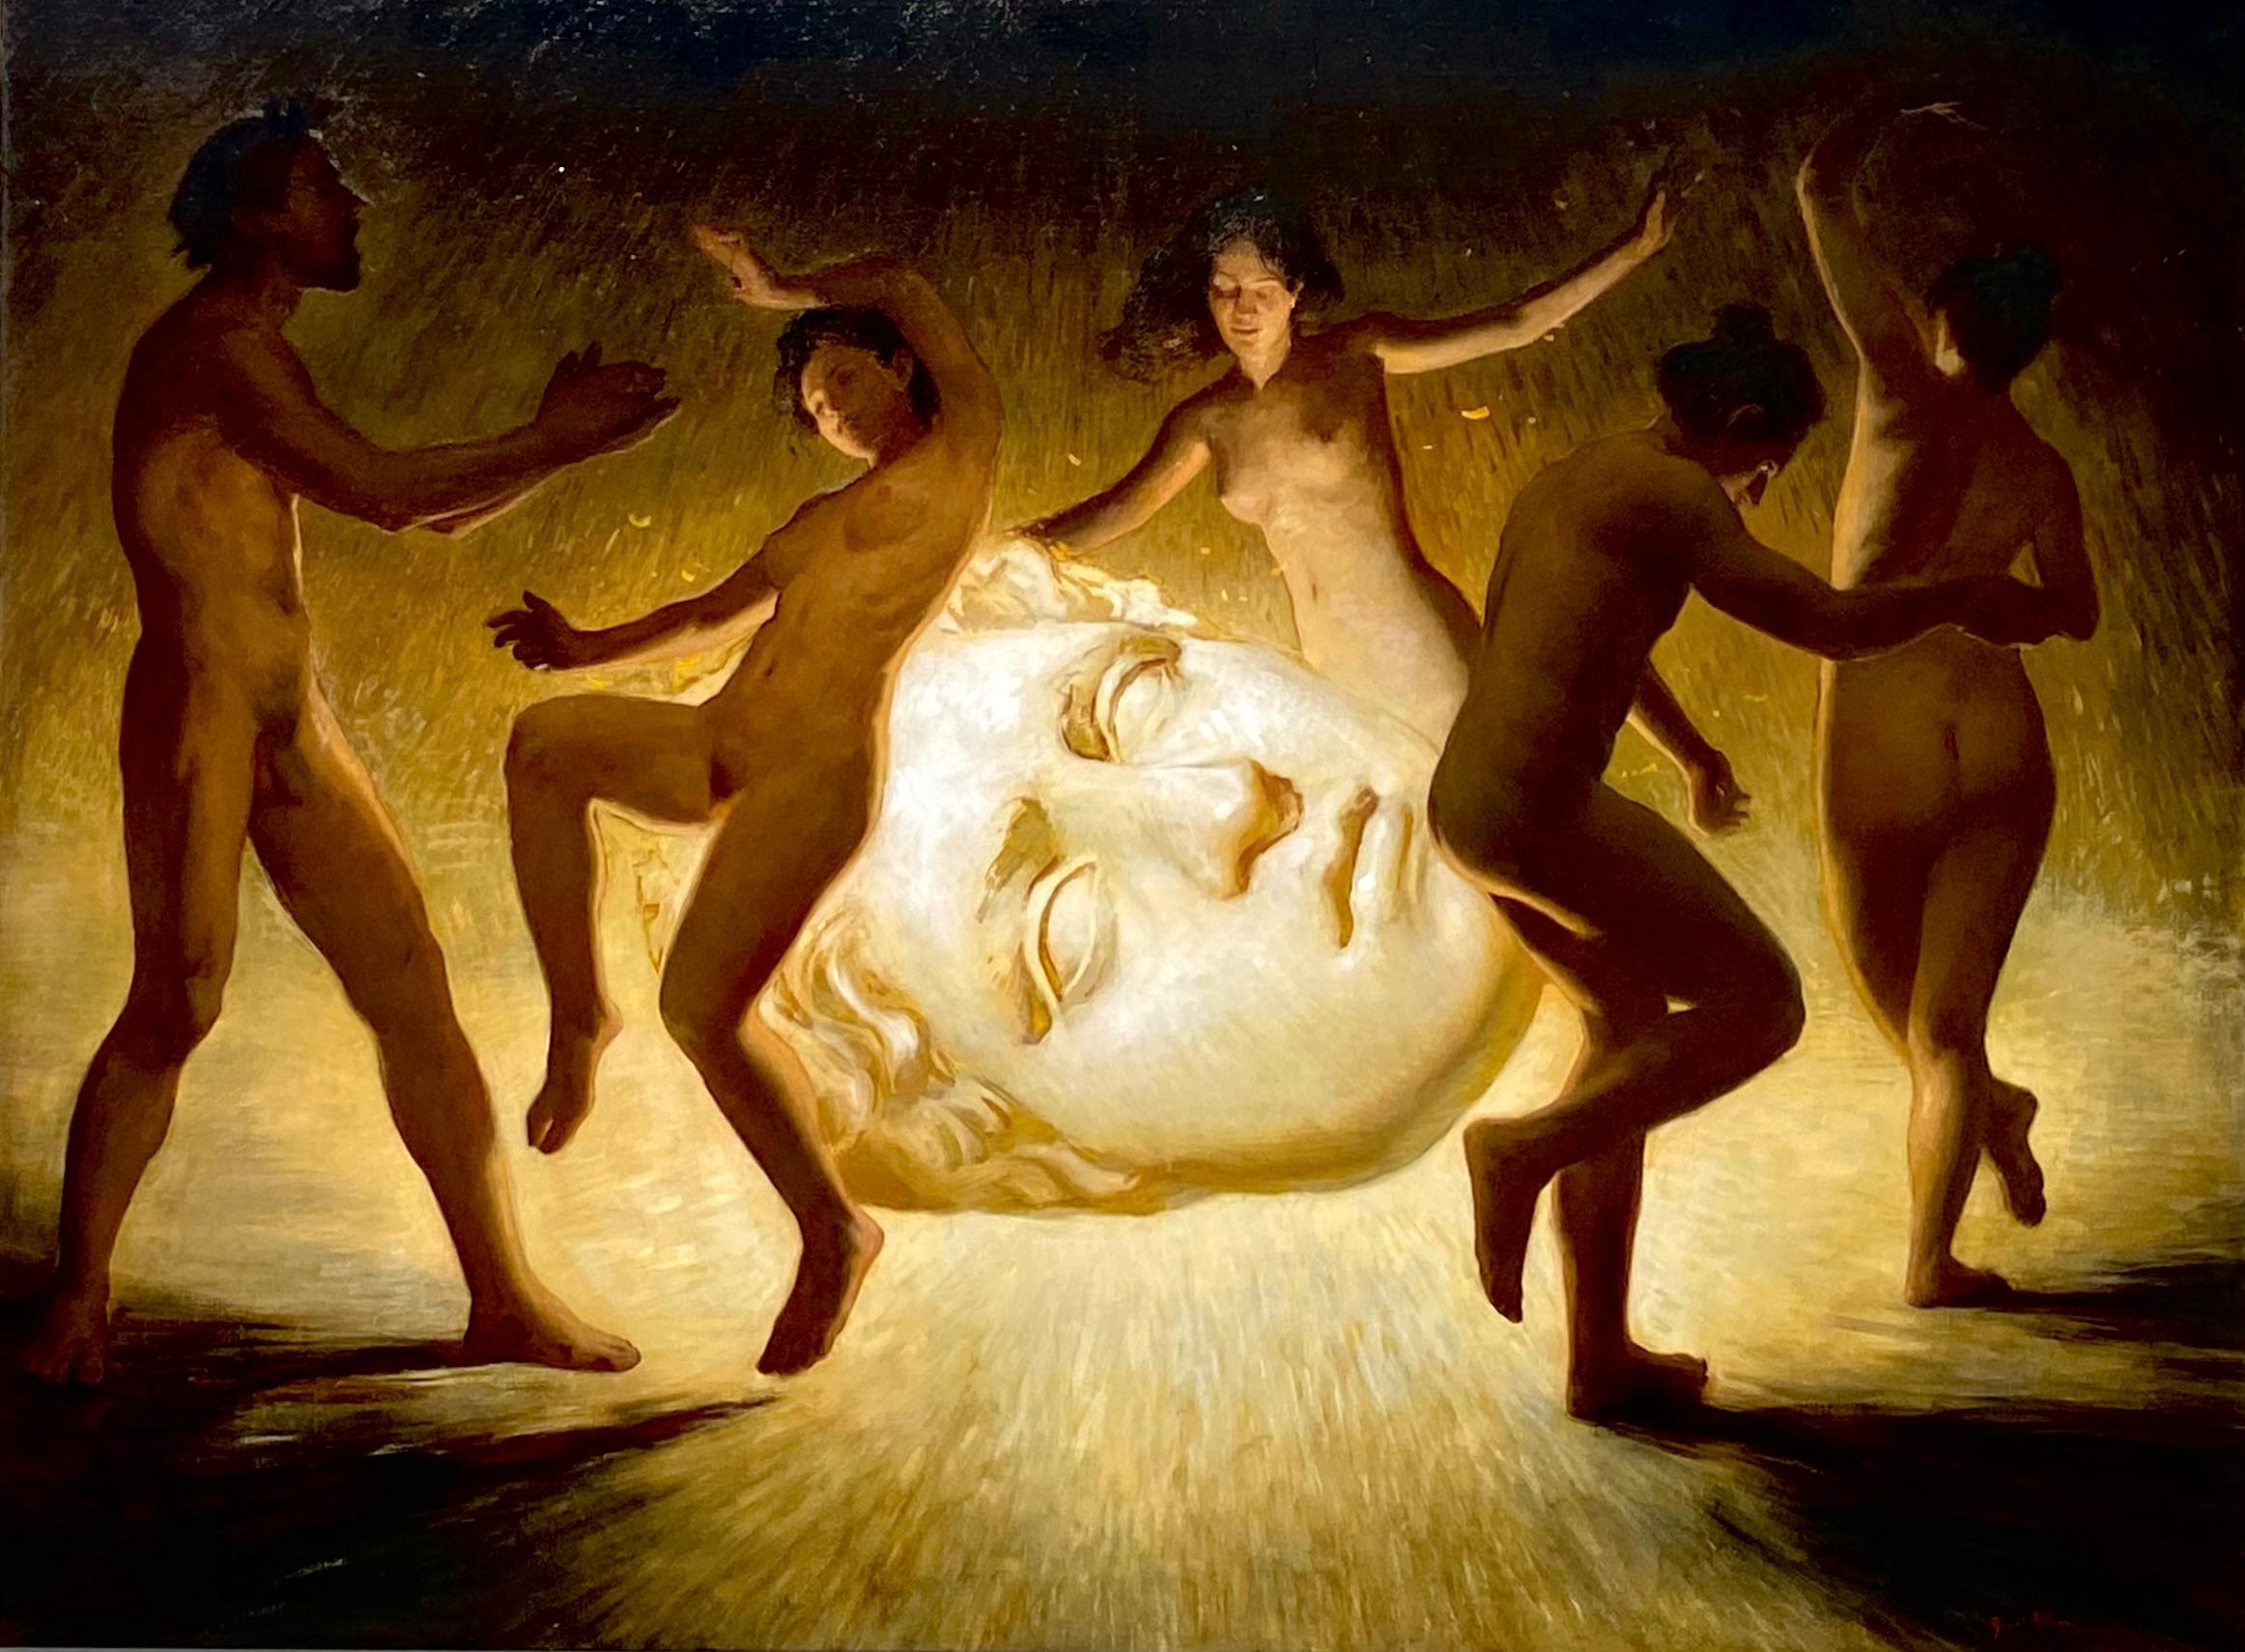 The Fall- 21st Century Contemporary Painting of dancing nude male & females (L'automne - peinture contemporaine du 21e siècle de nus masculins et féminins dansants)